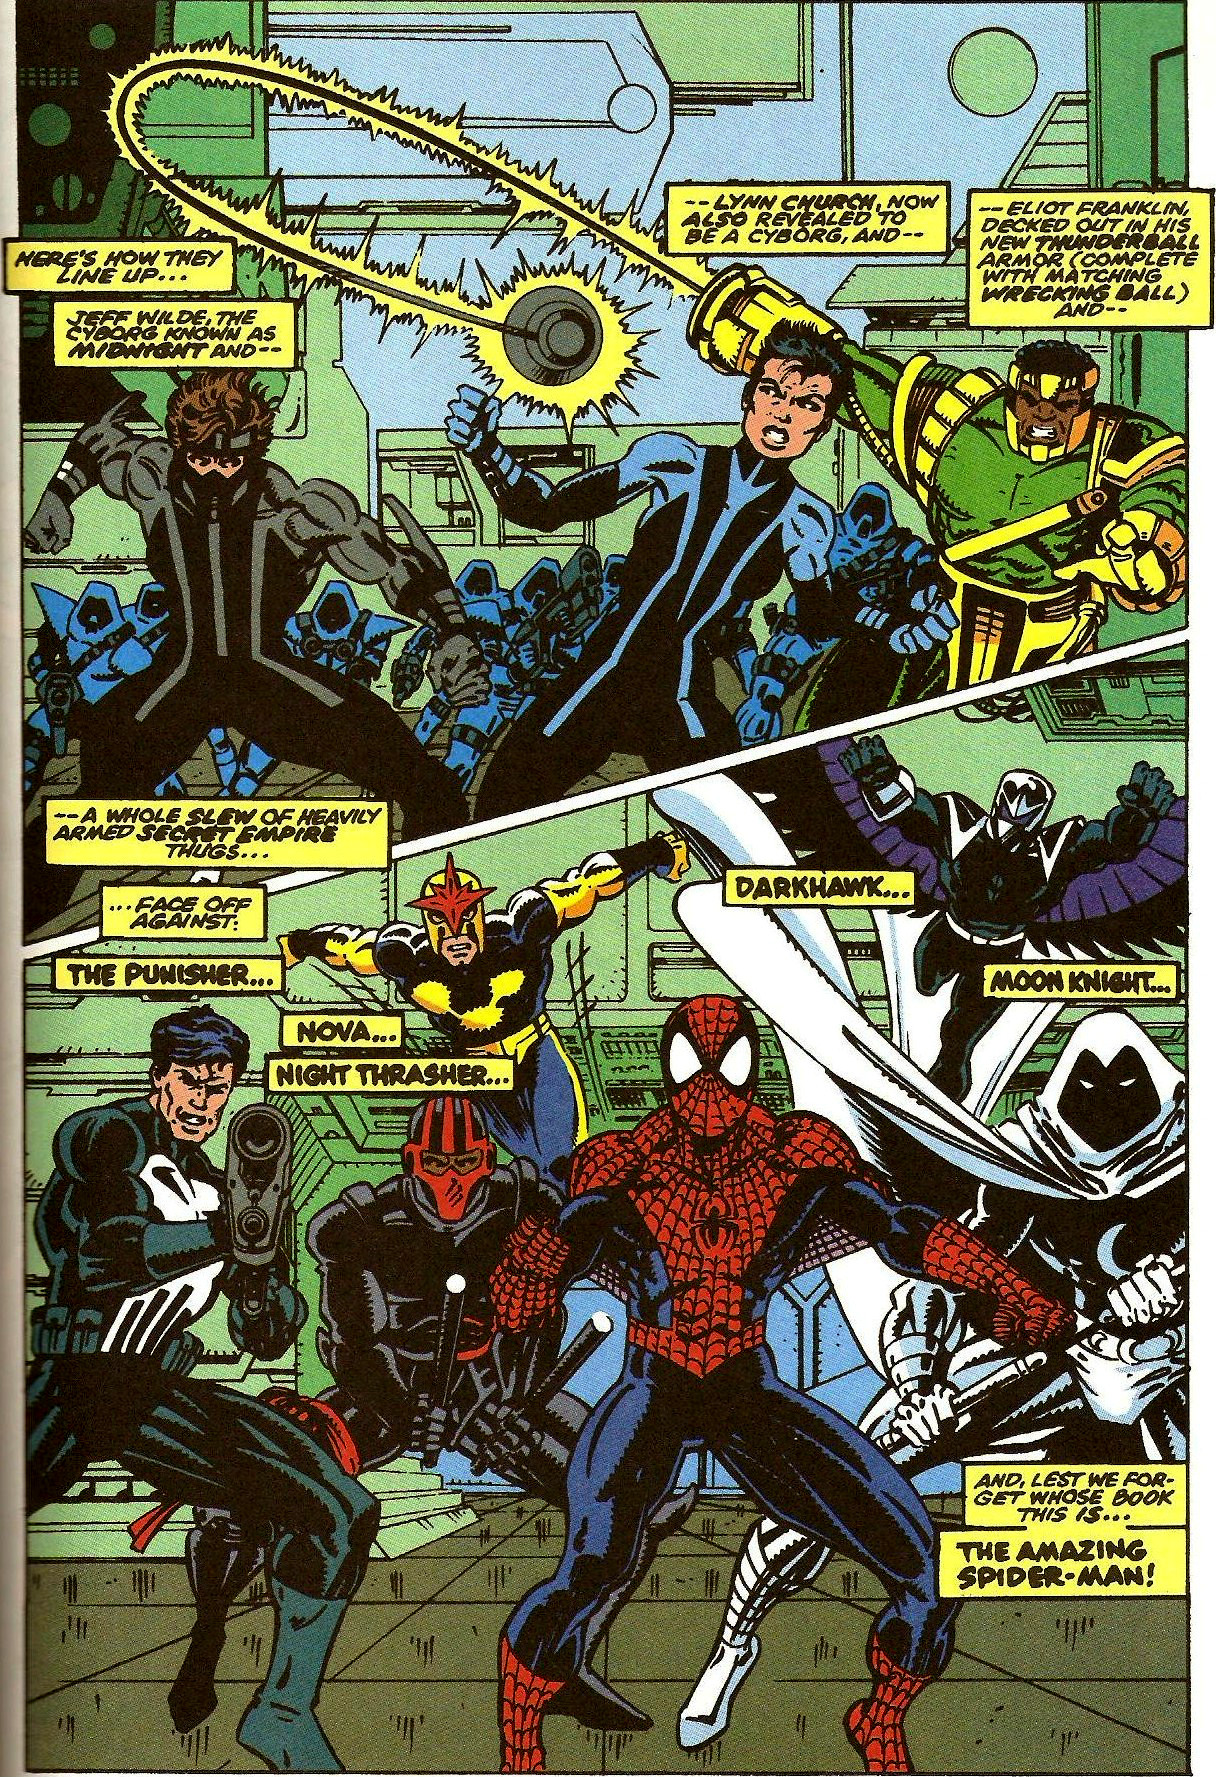 Amazing Spider-Man (Vol. 1) #358 (1992)